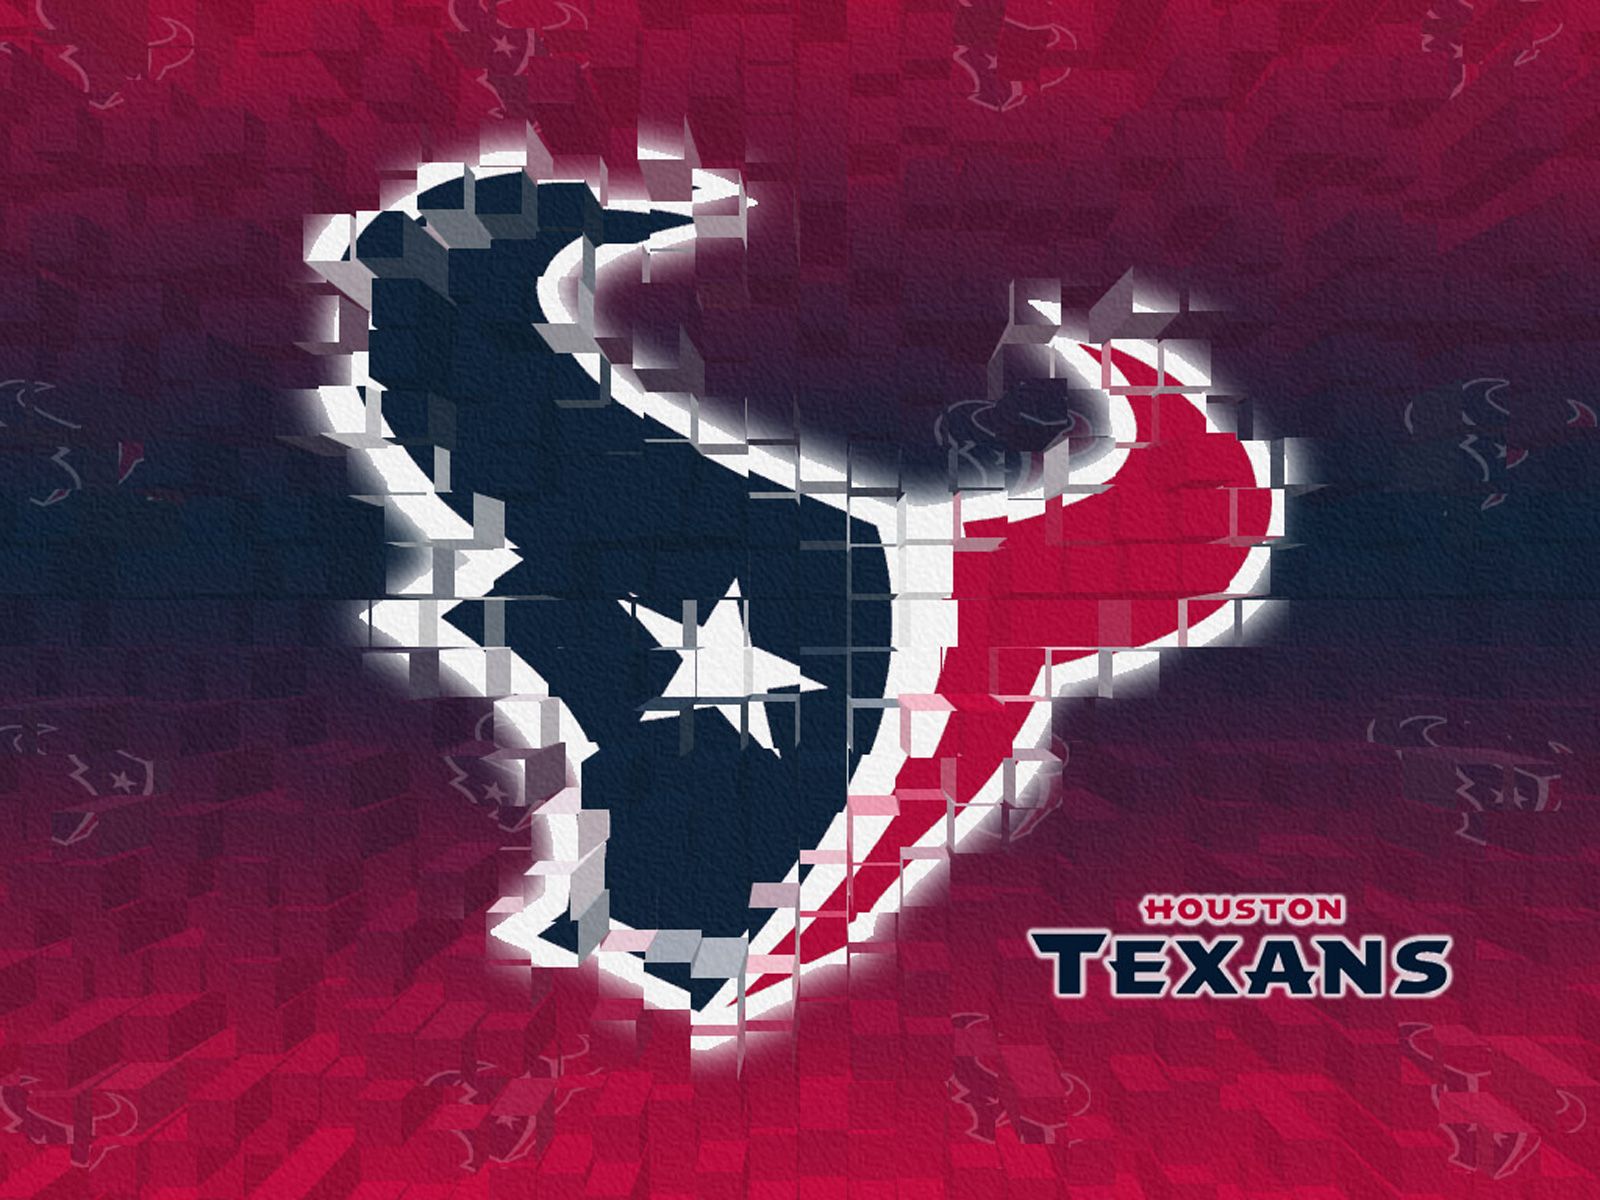 Free download Houston Texans wallpaper Houston Texans logo nfl